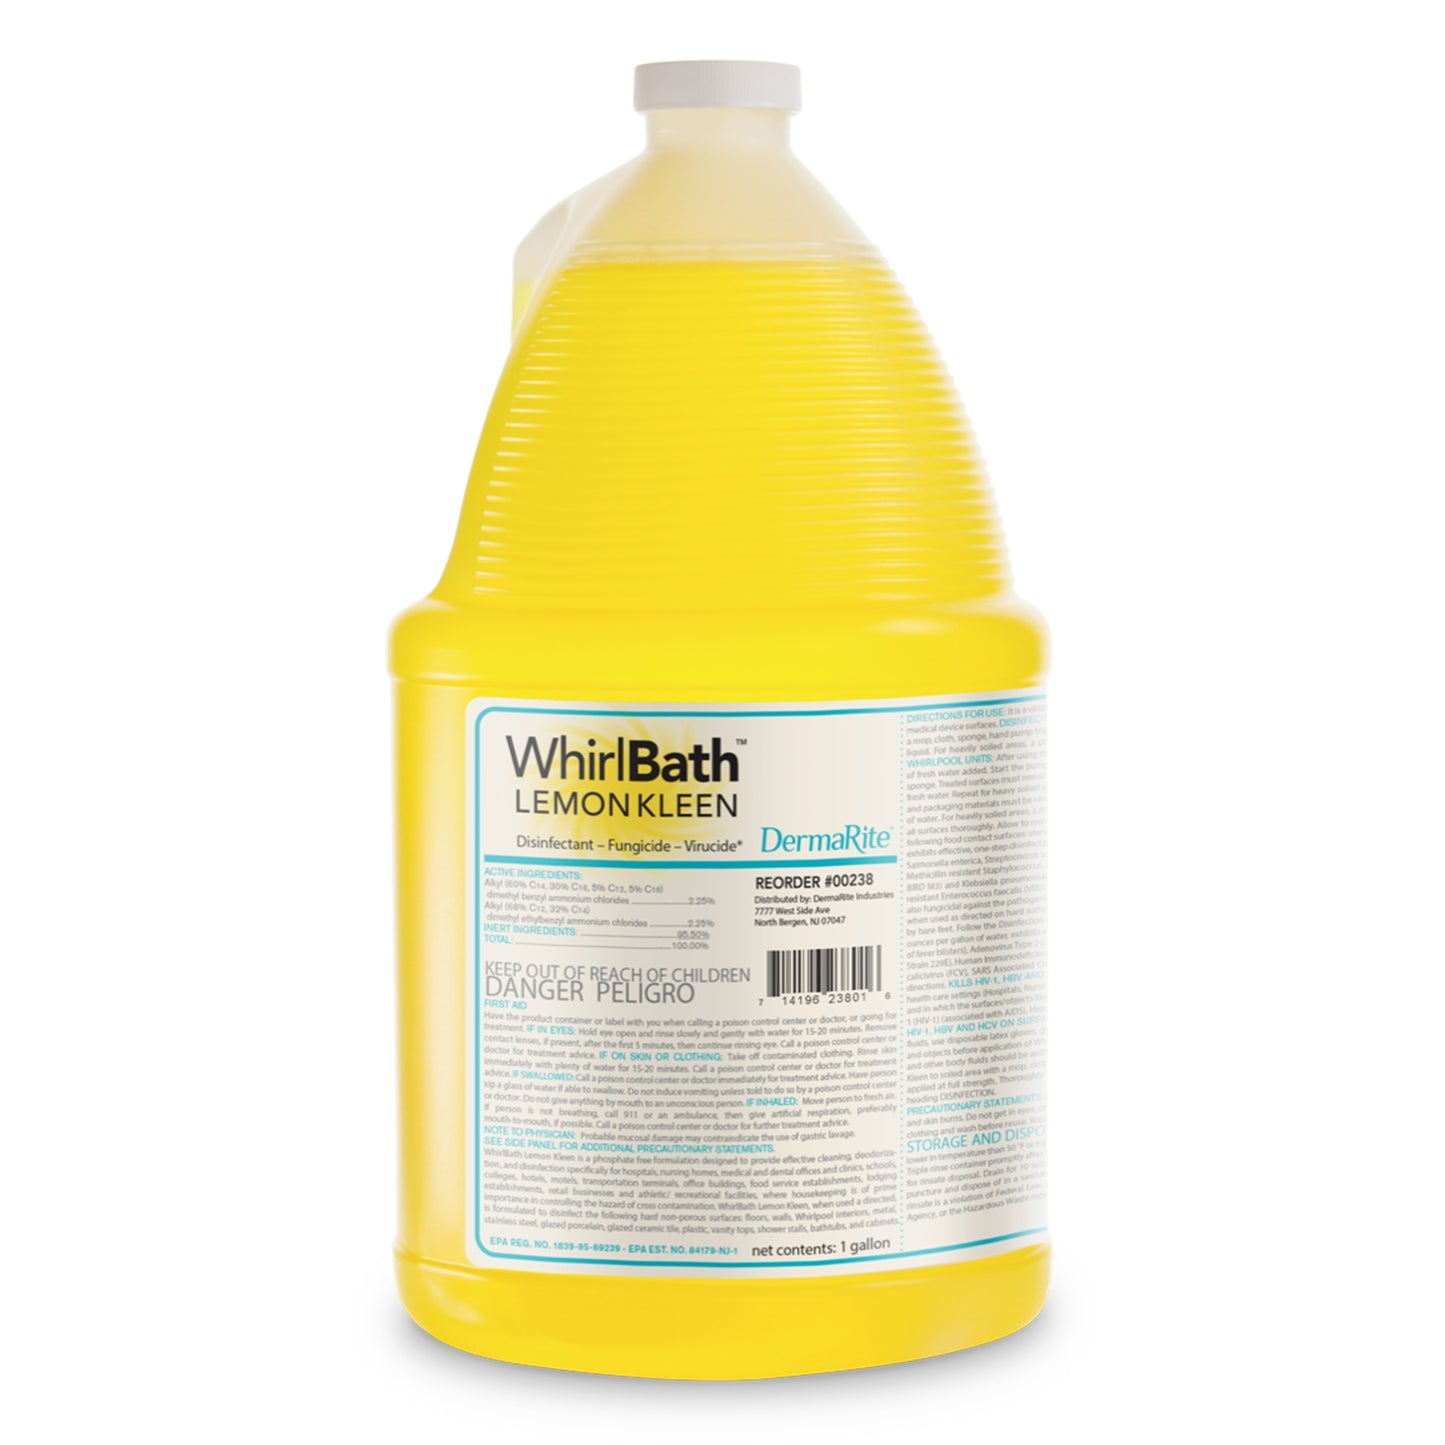 DermaRite WhirlBath Lemon Kleen Whirlpool Disinfectant Cleaner Liquid 1 gal. Jug - 00238